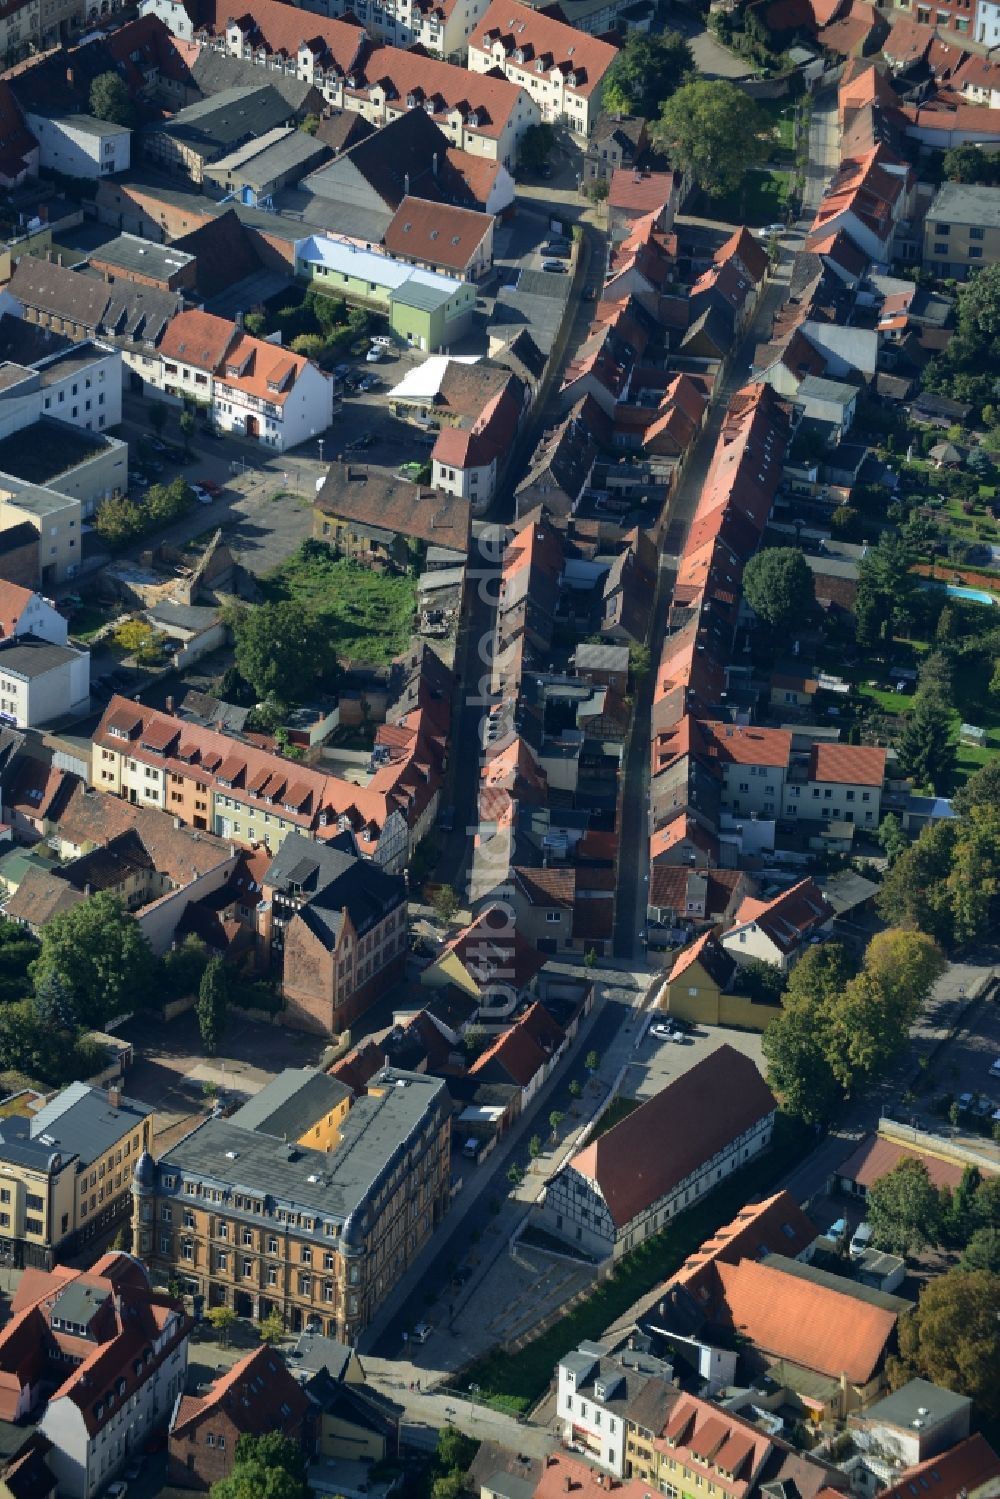 Luftbild Sangerhausen - Verlauf der Hospitalstraße mit historischen Gebäuden im Stadtzentrum von Sangerhausen im Bundesland Sachsen-Anhalt